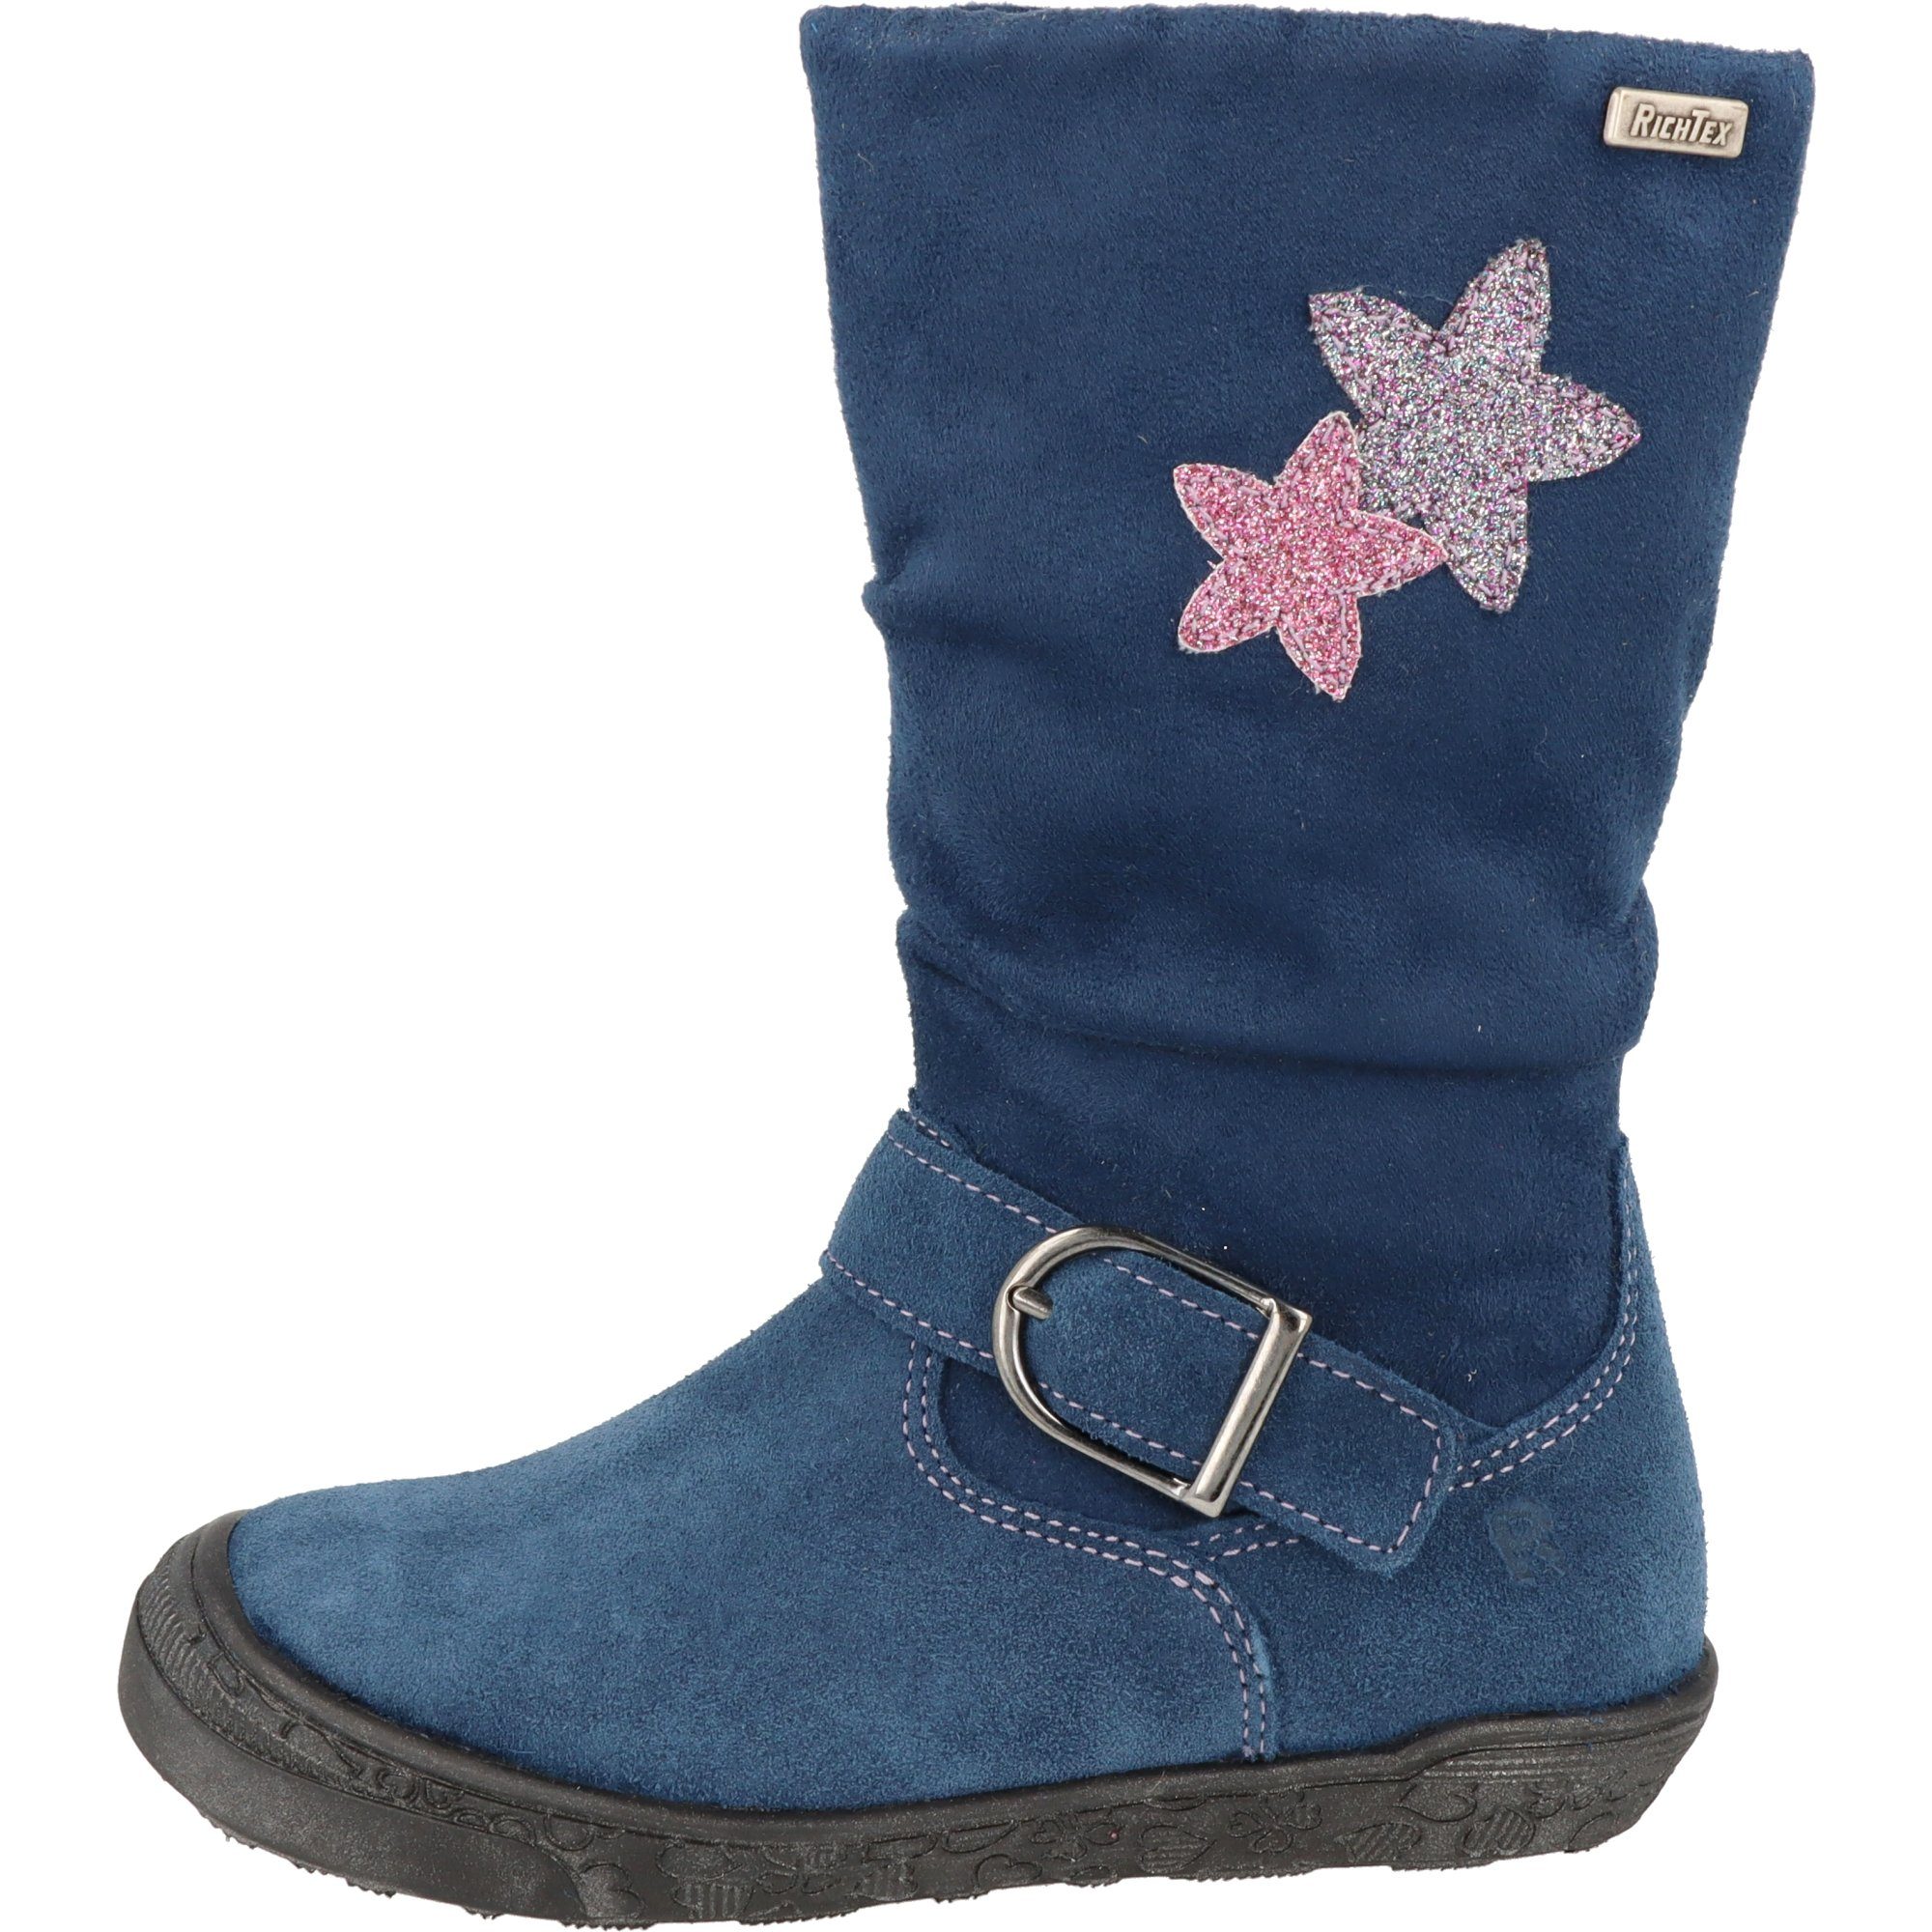 Richter Mädchen Schuhe Leder Tex 4152-456-6811 Winterstiefel Blau Stiefel gefüttert Sterne